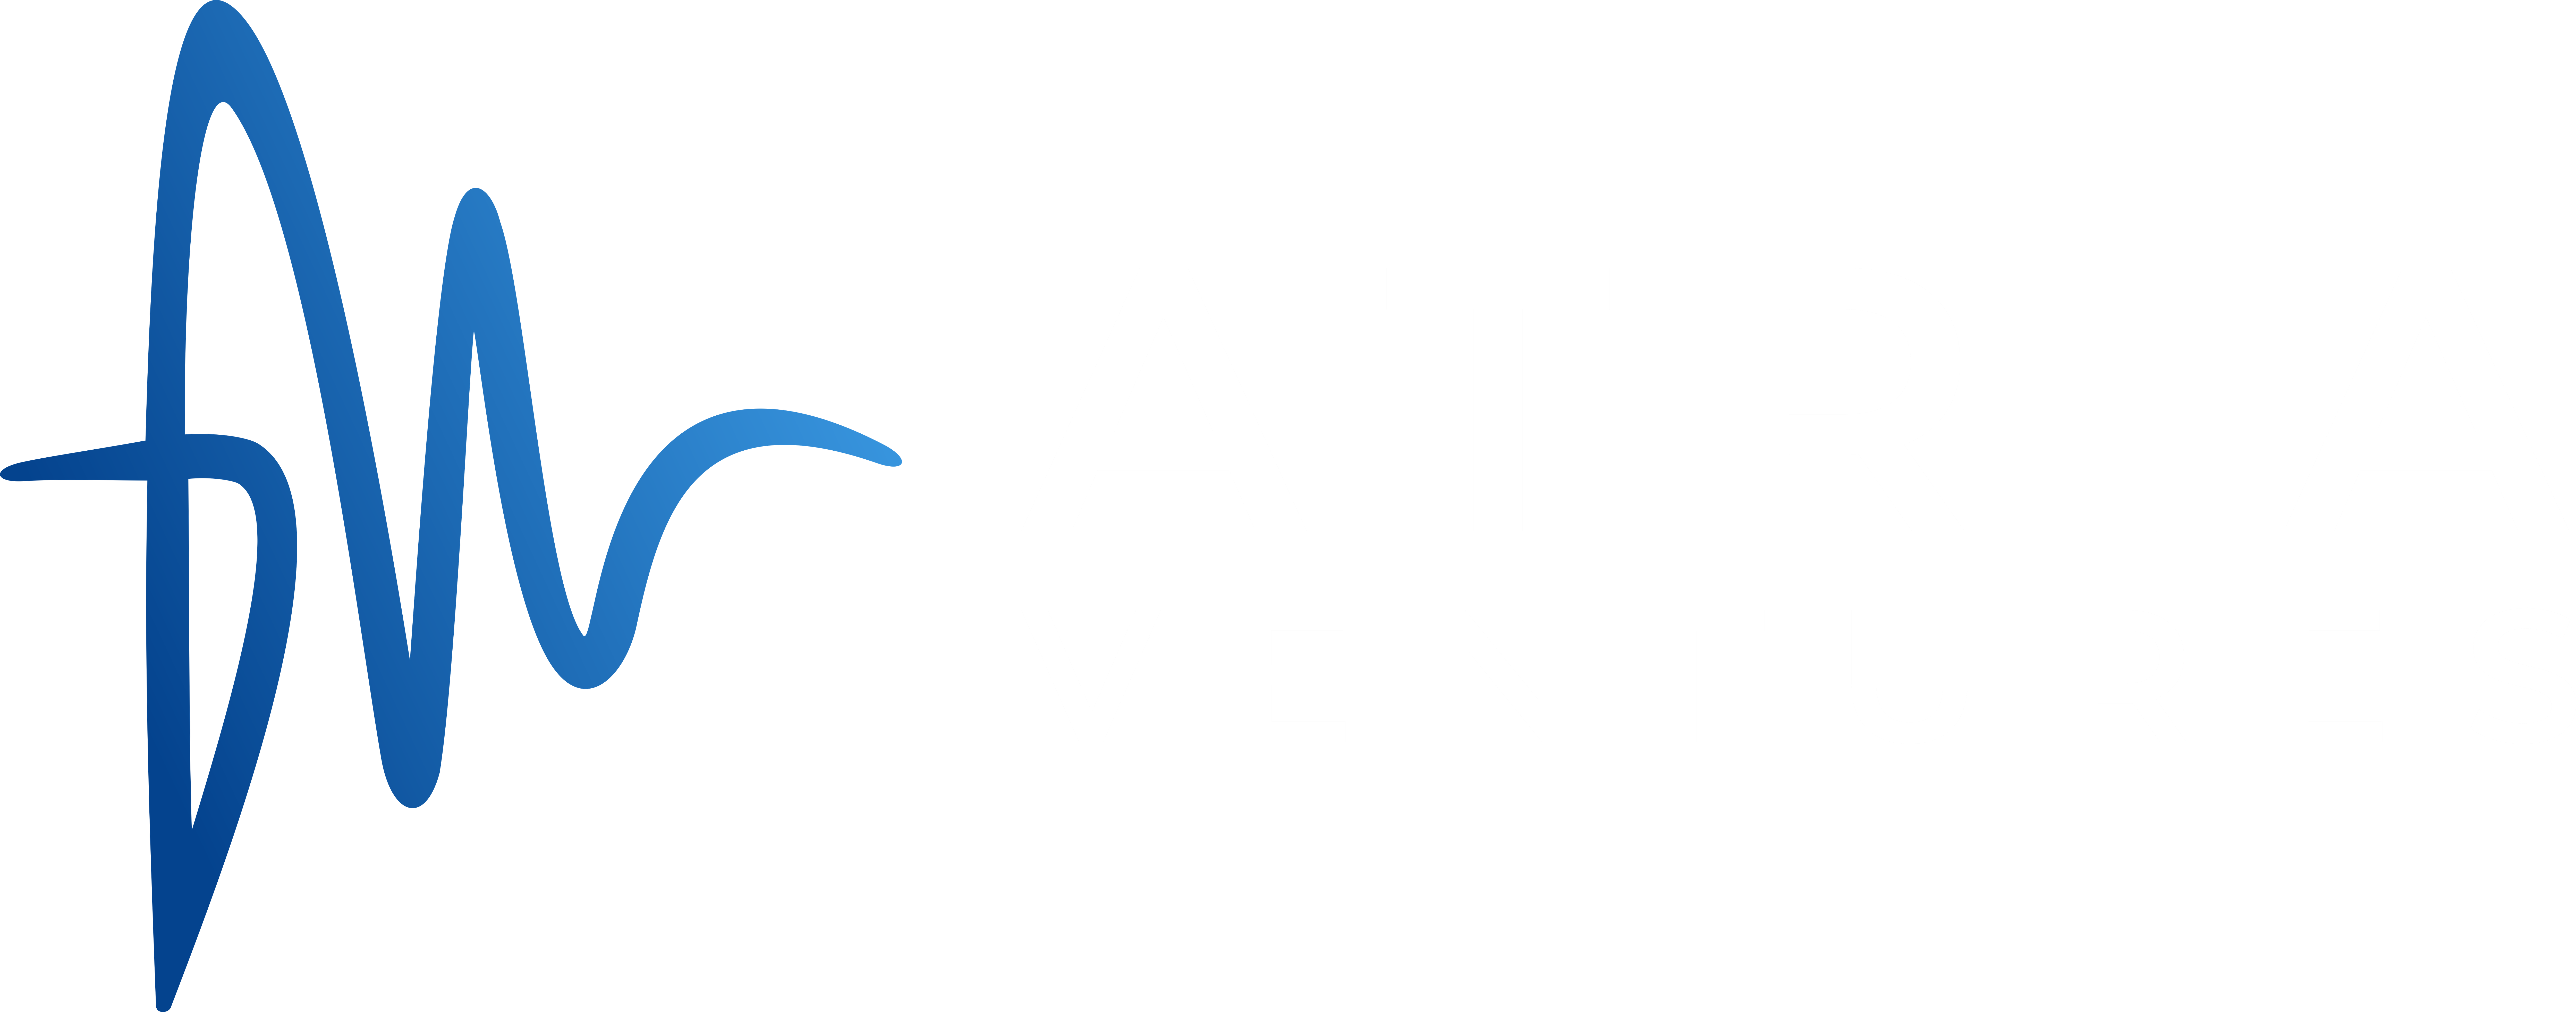 Atria Ventures